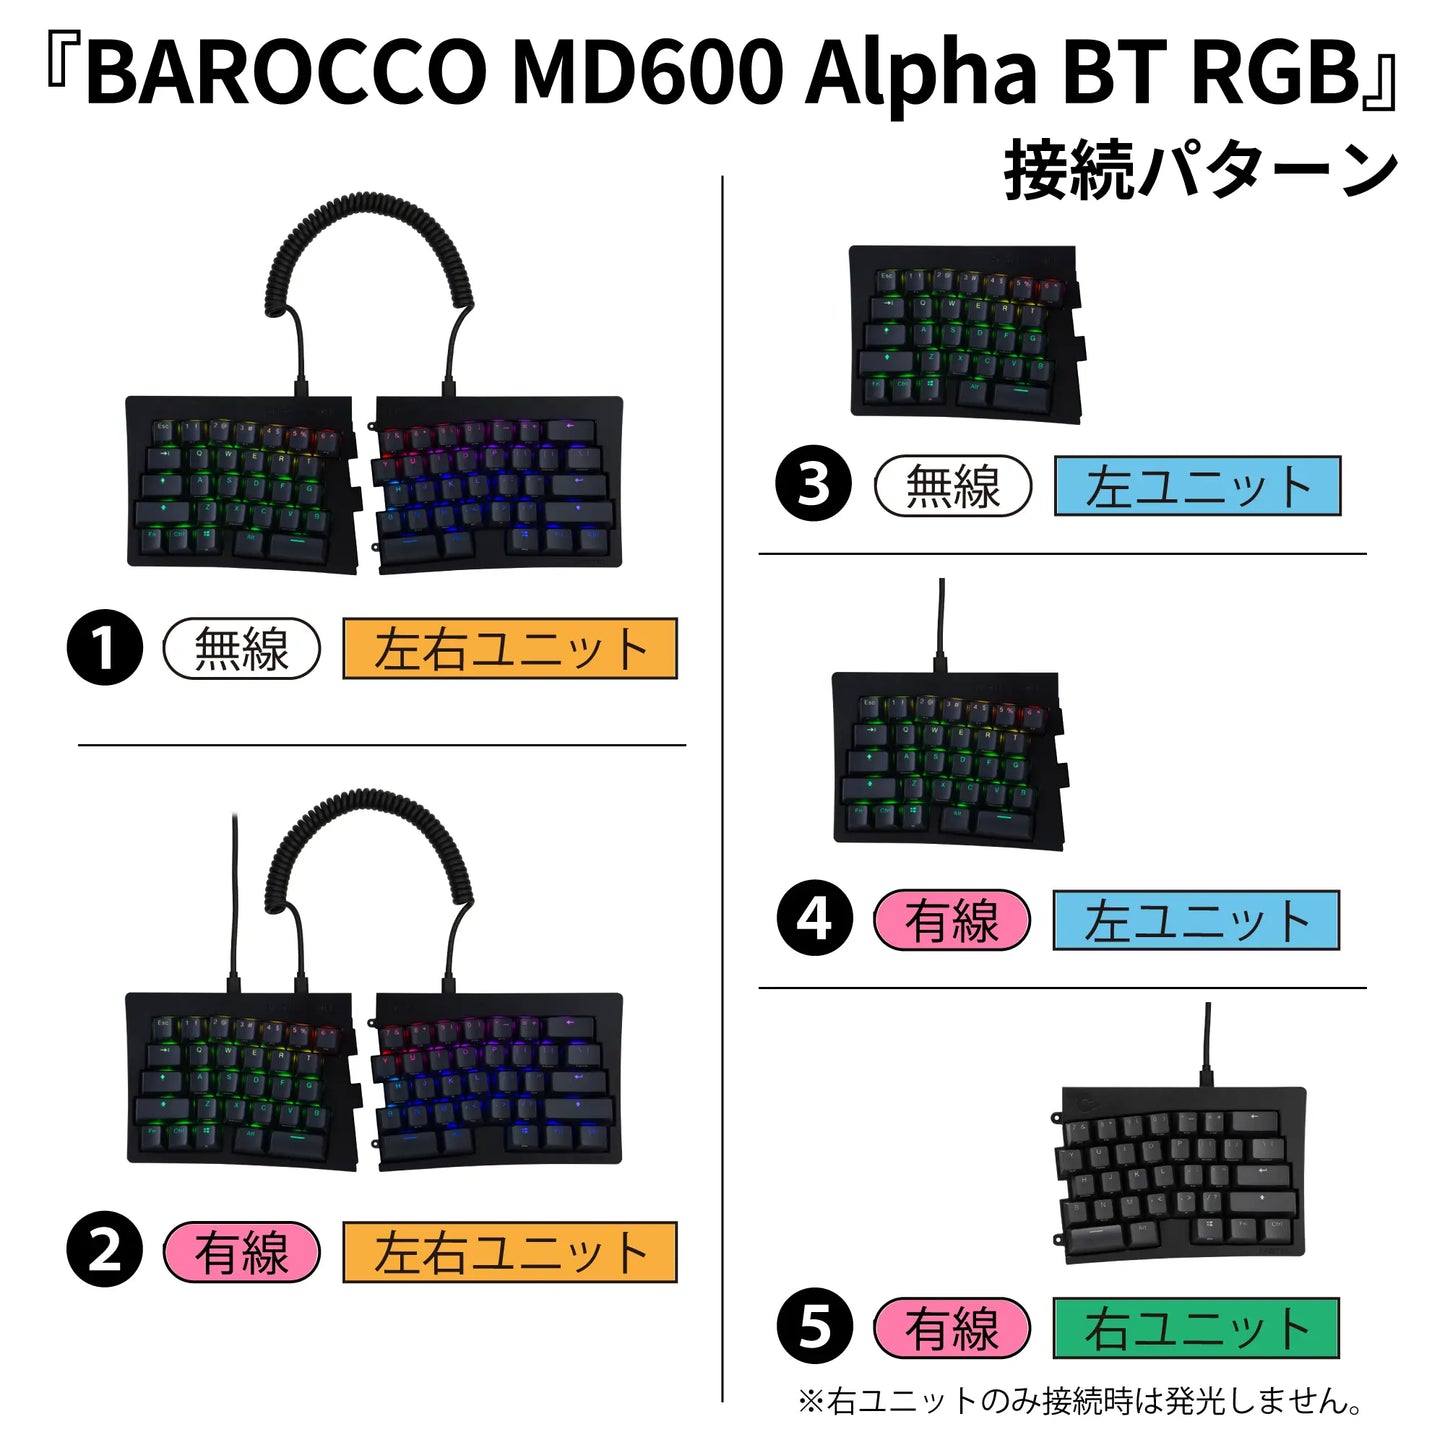 BAROCCO MD600 Alpha BT RGB - 英語配列